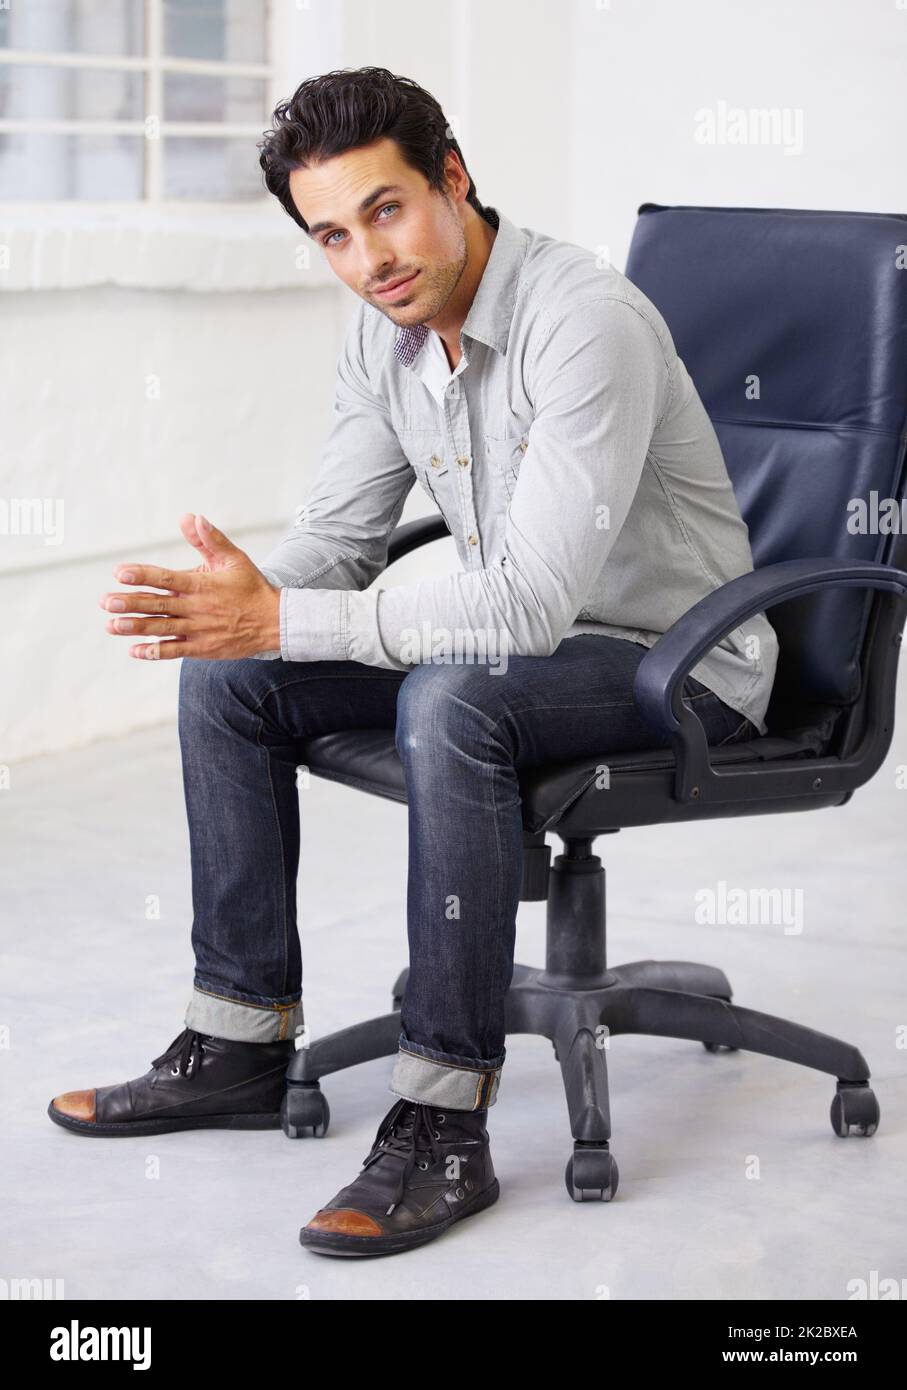 Jung, hübsch und stilvoll. Aufnahme eines hübschen Jungen, der auf einem Stuhl sitzt. Stockfoto